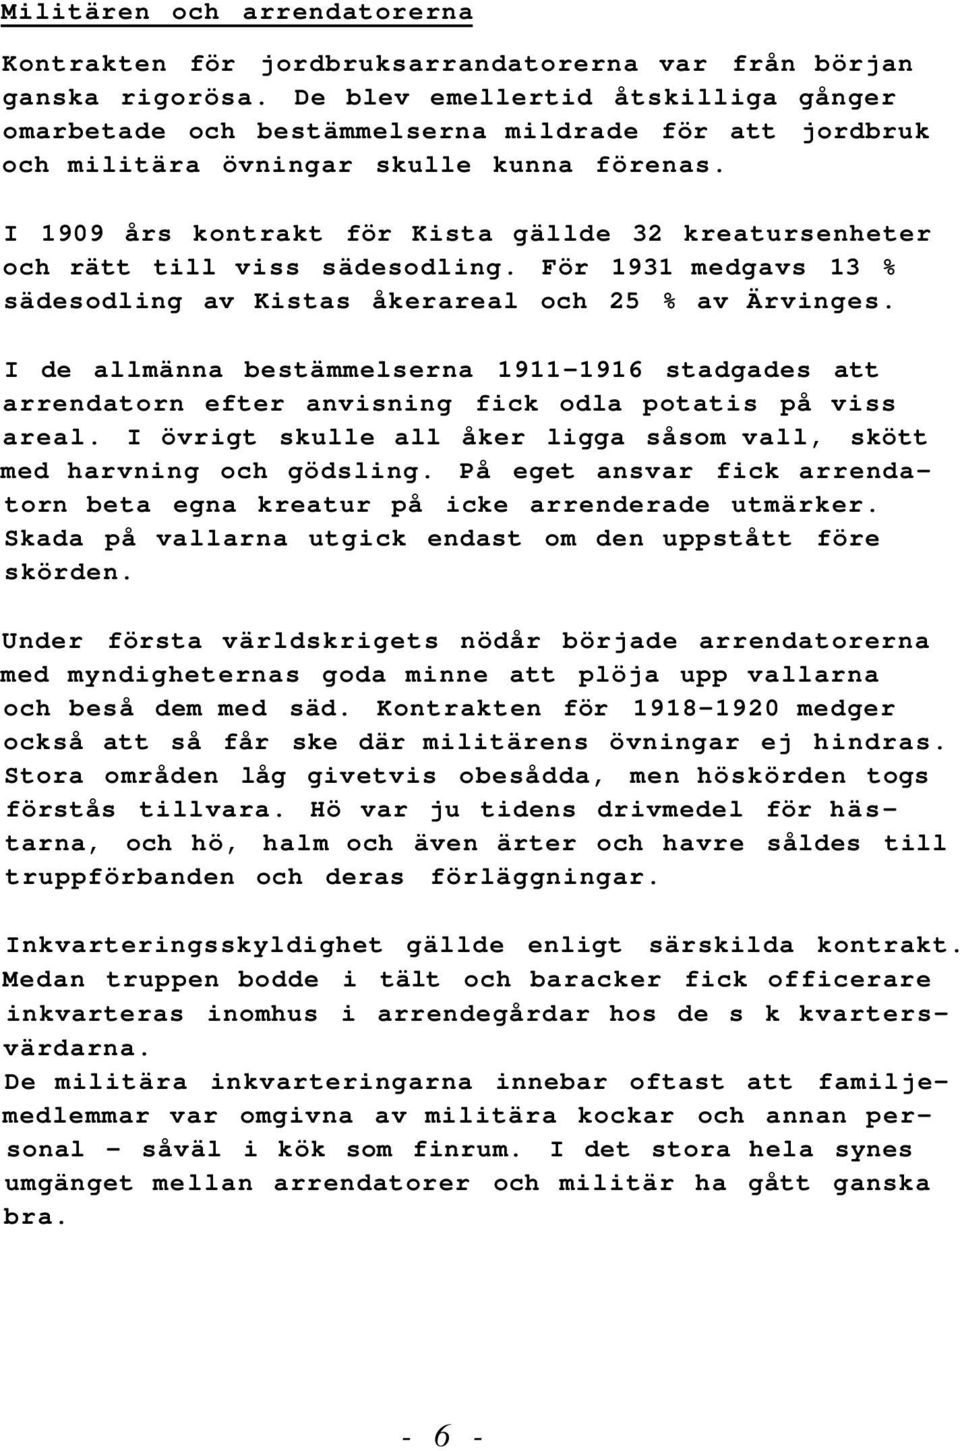 I 1909 års kontrakt för Kista gällde 32 kreatursenheter och rätt till viss sädesodling. För 1931 medgavs 13 % sädesodling av Kistas åkerareal och 25 % av Ärvinges.